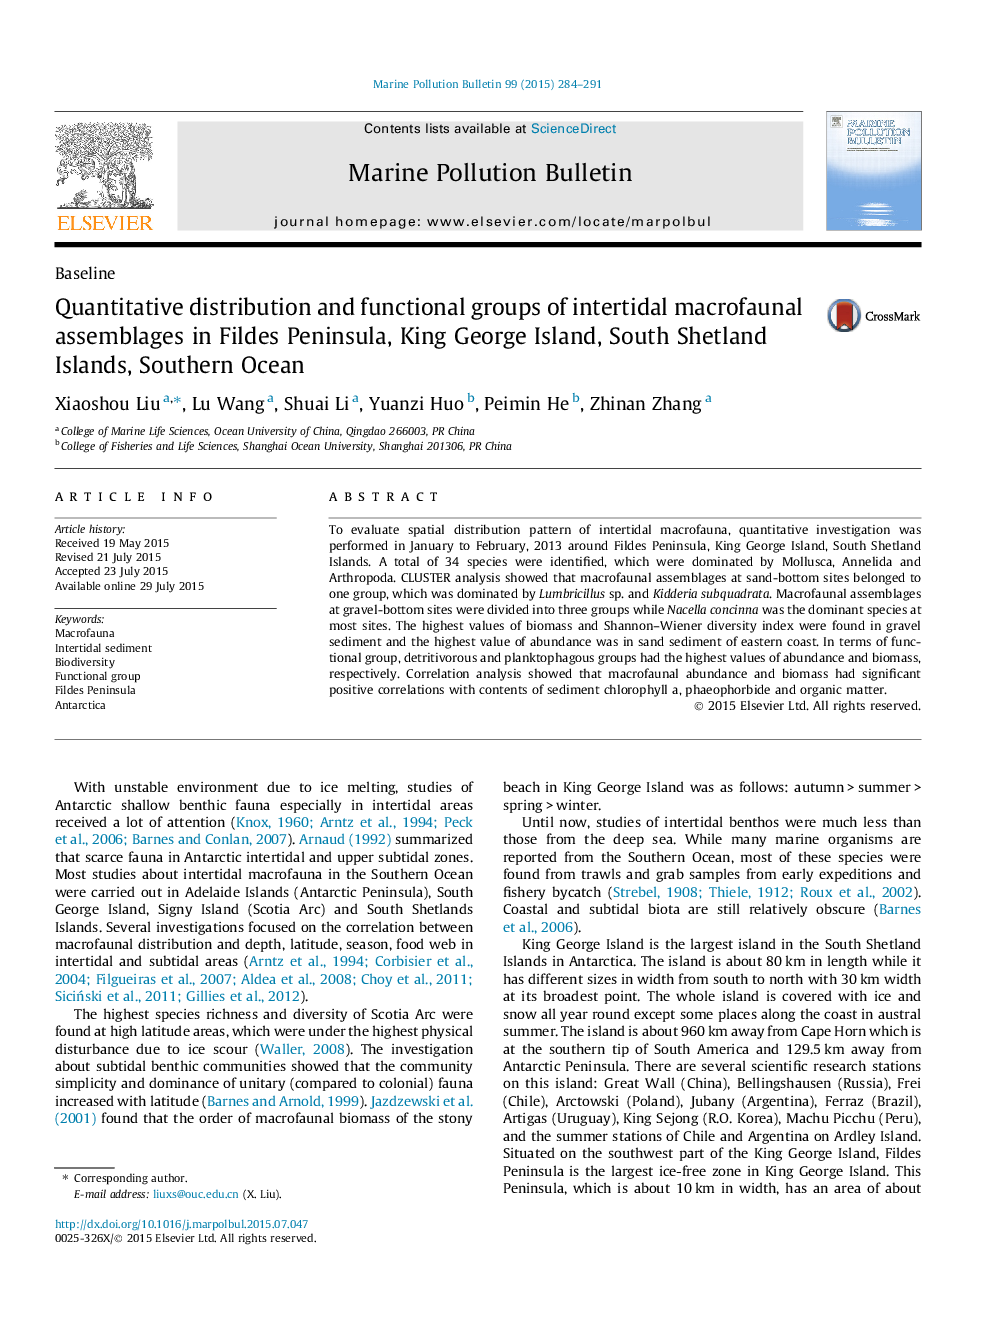 توزیع کمی و گروه های عملکردی مجموعه های کلان ماکرو فونال در جزیره فیدل، جزیره کینگ جورج، جزایر شتلند جنوبی، اقیانوس جنوبی 